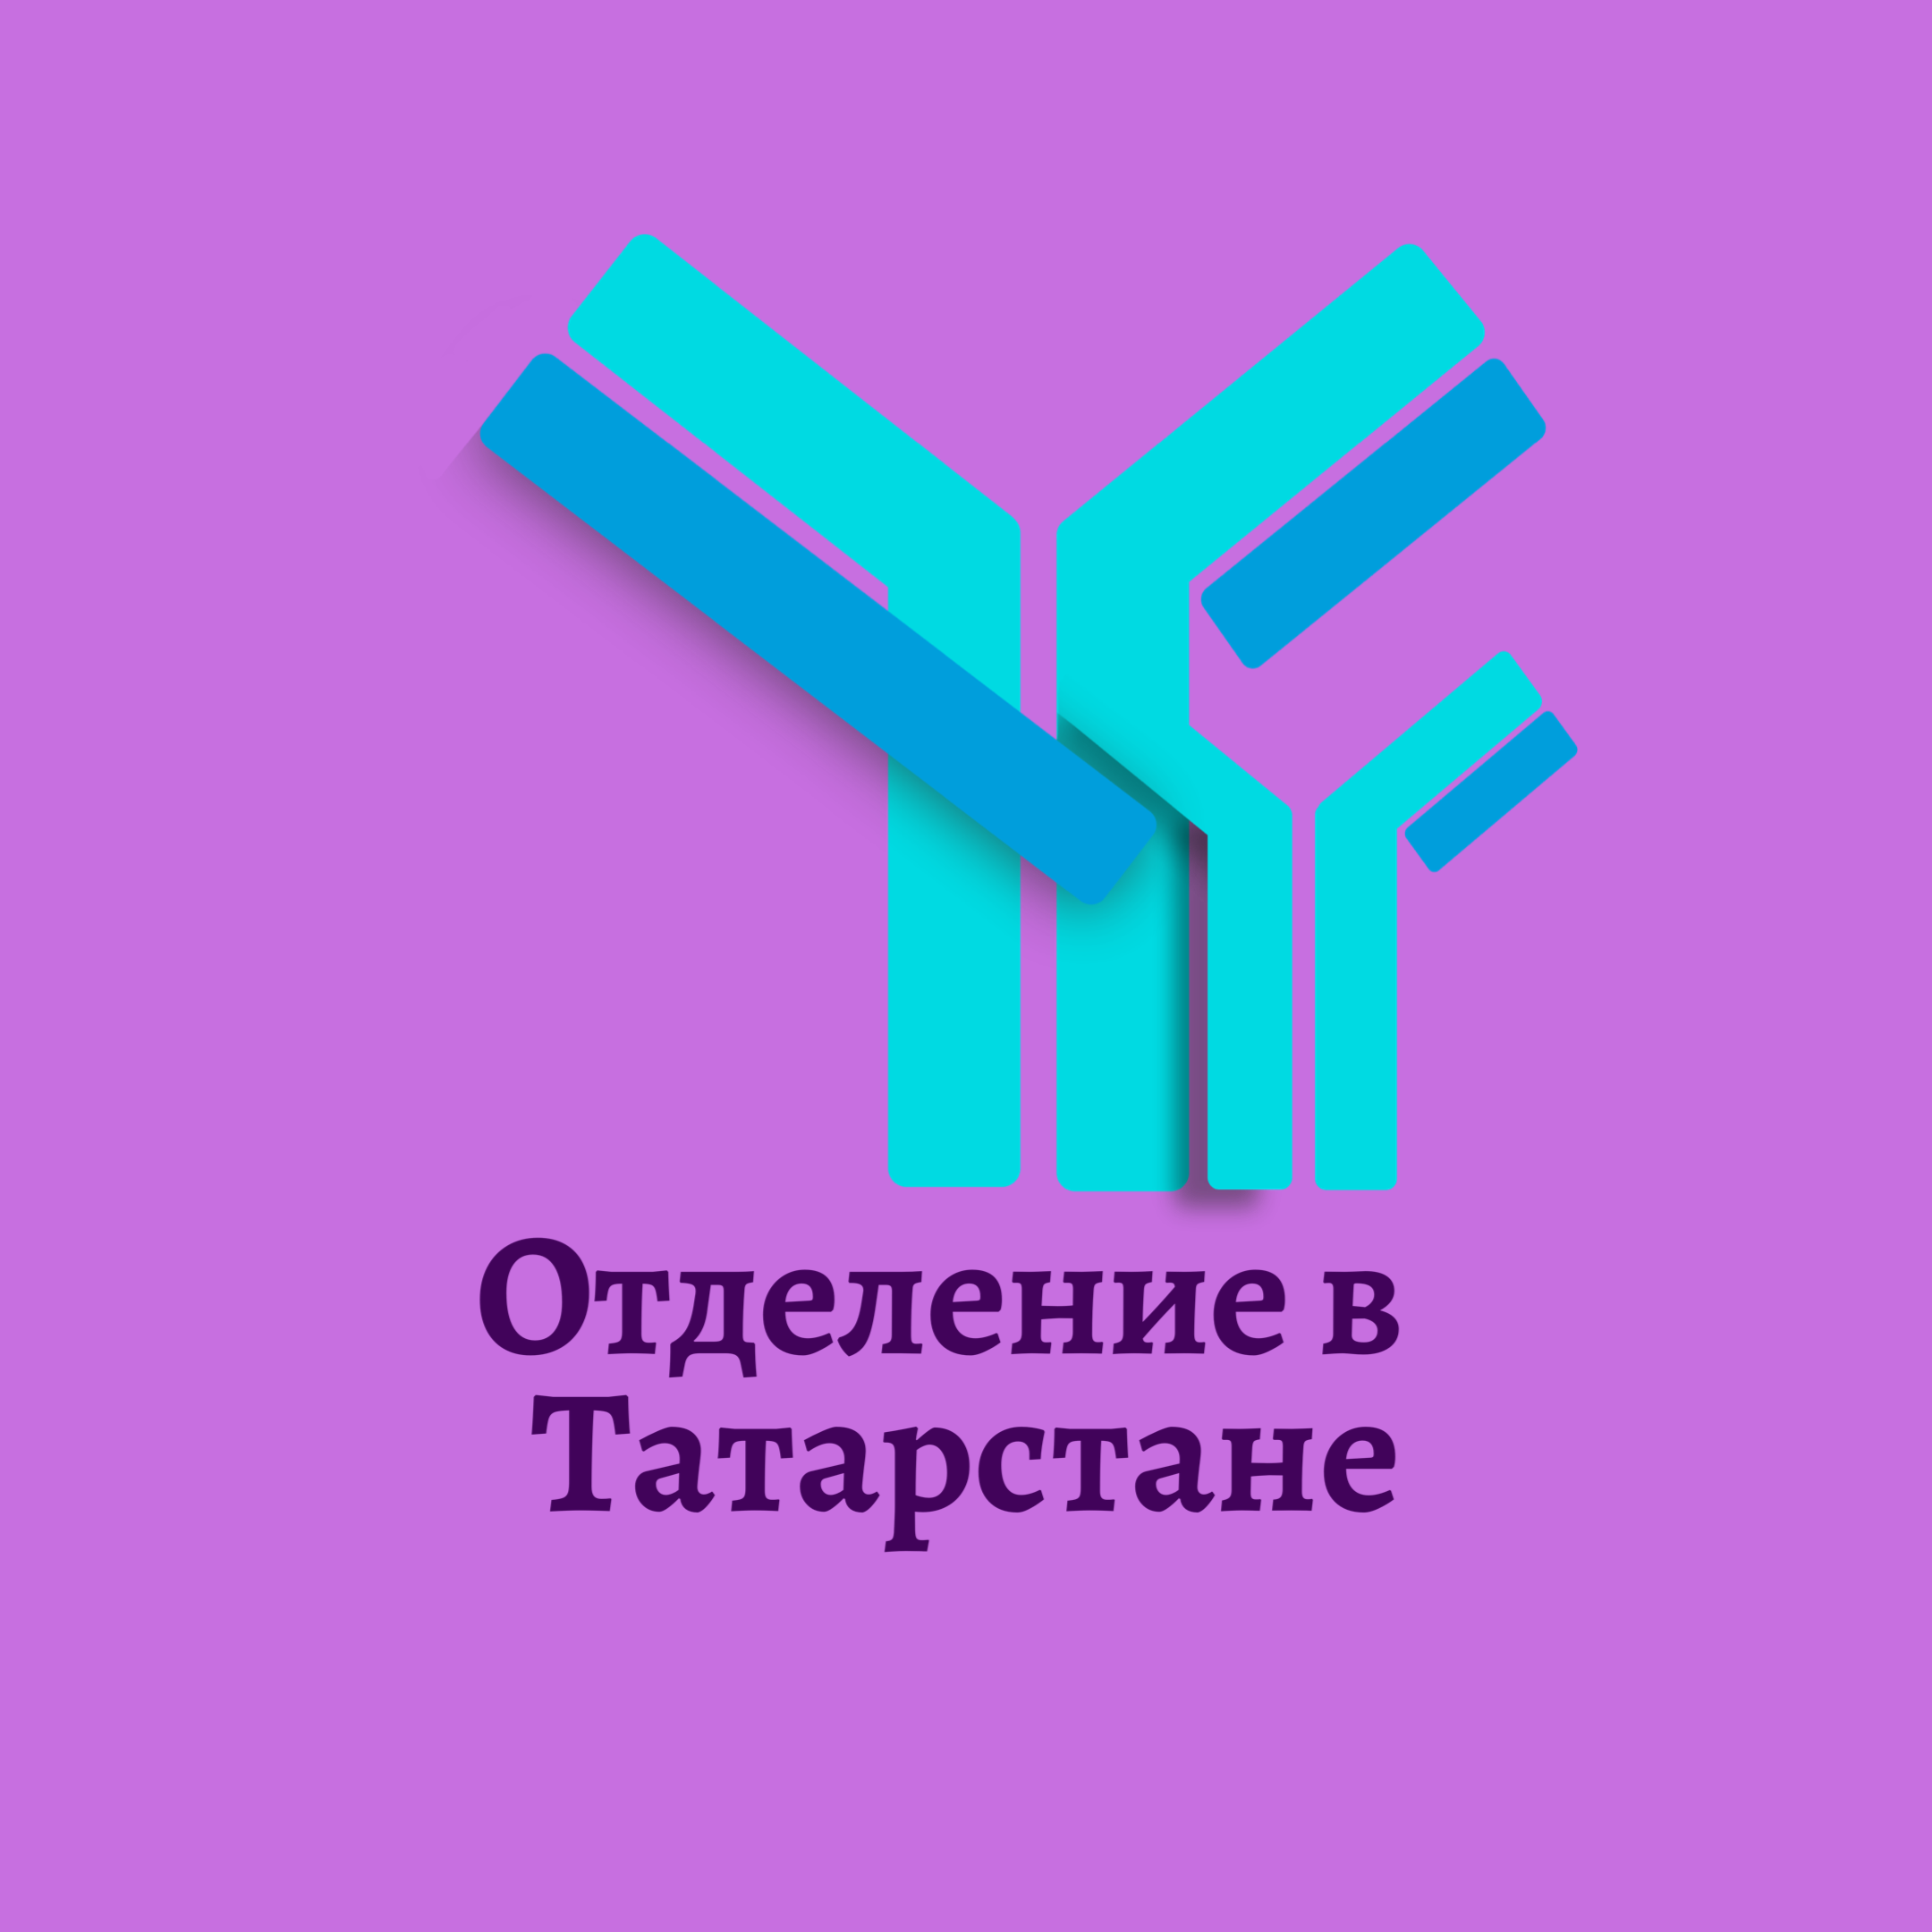 Отделение Межрегиональной пациентской общественной организации по первичному иммунодефициту в Республике Татарстан